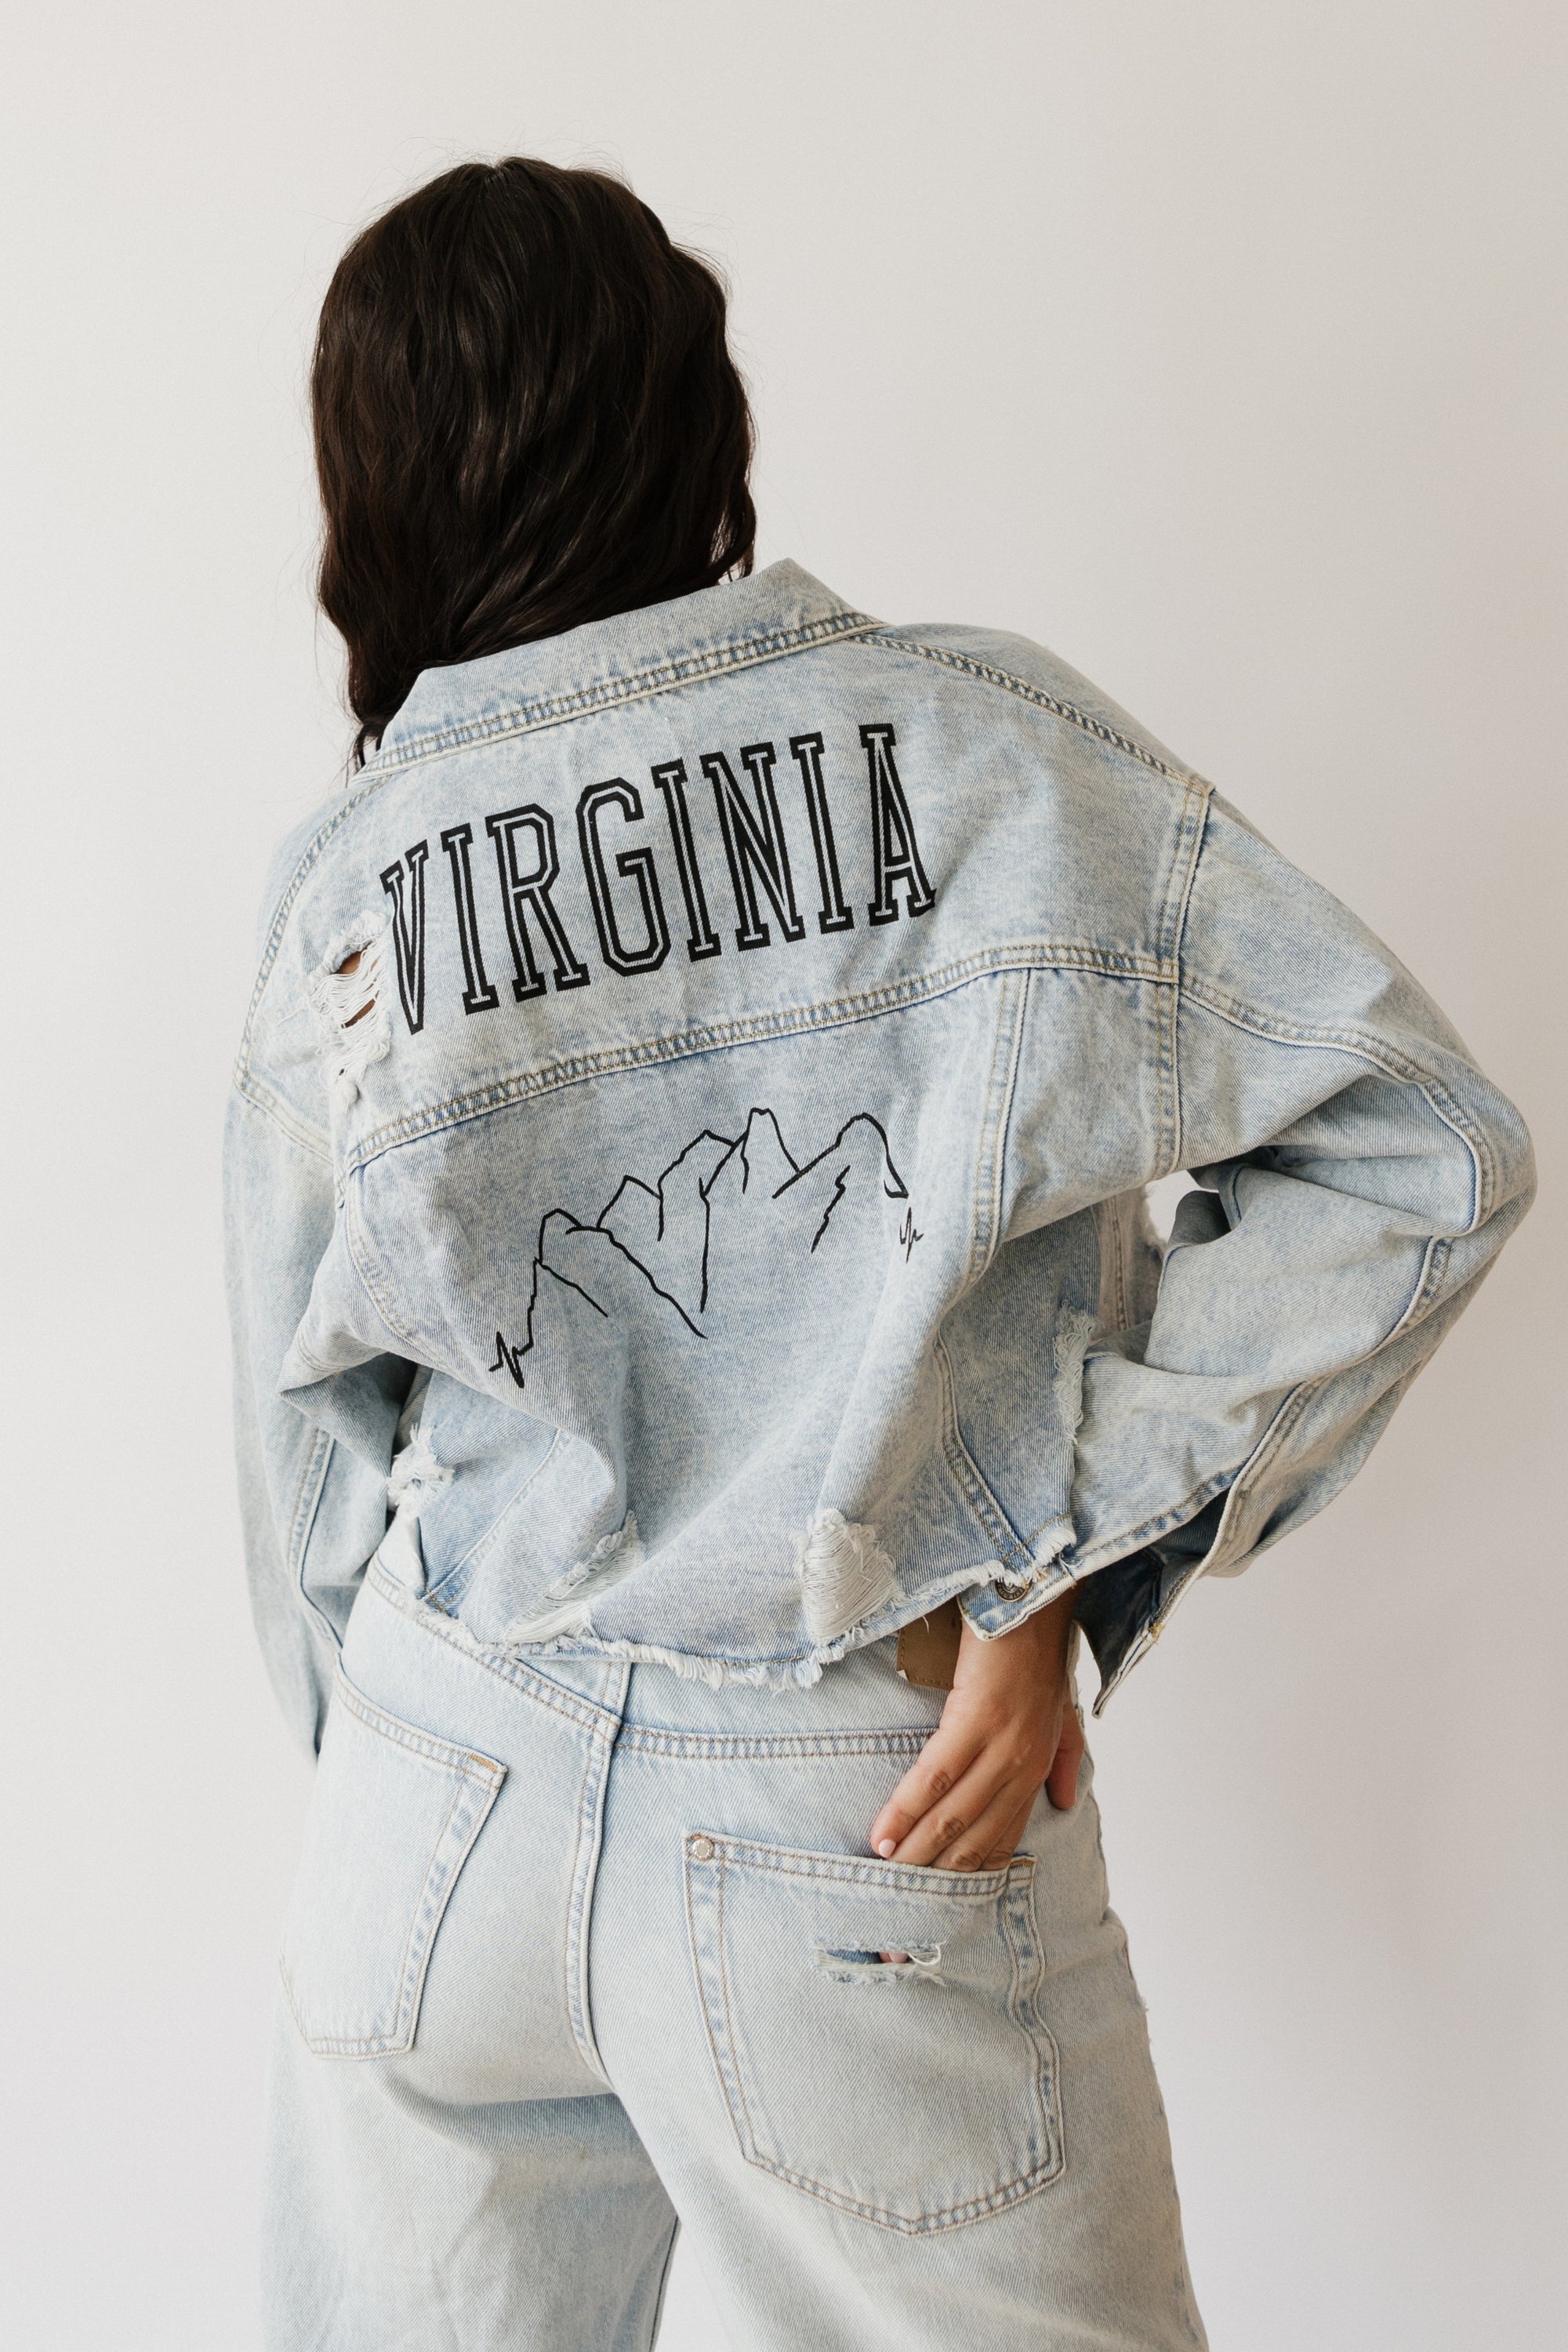 Virginia Skyline Denim Jacket